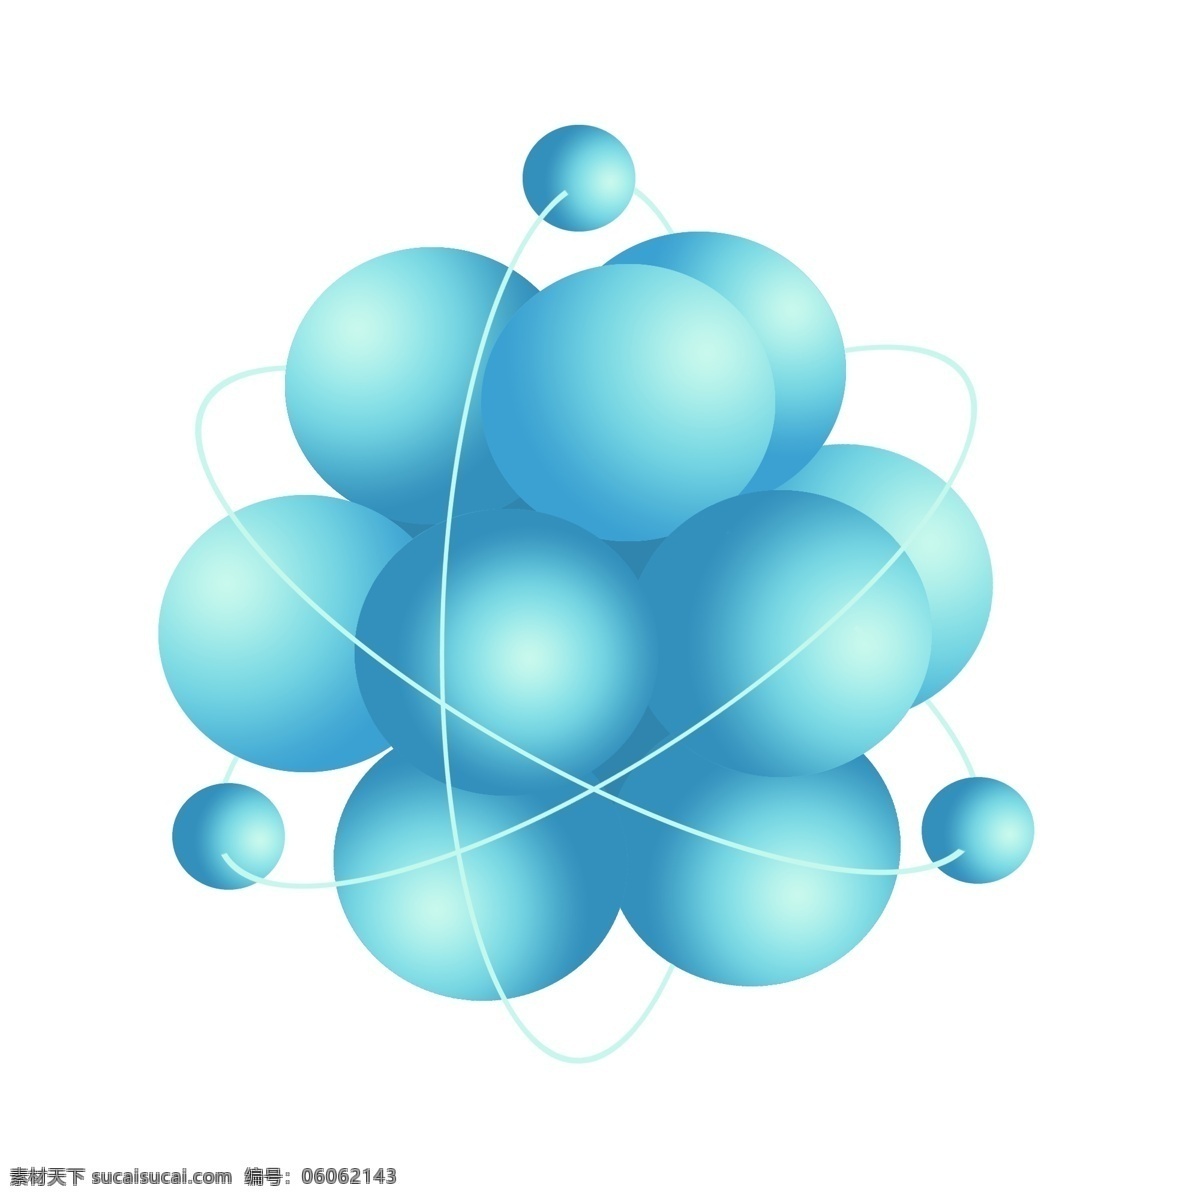 蓝色 化学 分子结构 化学结构图 化学分子 化学分子式 结构图 分子式 插画